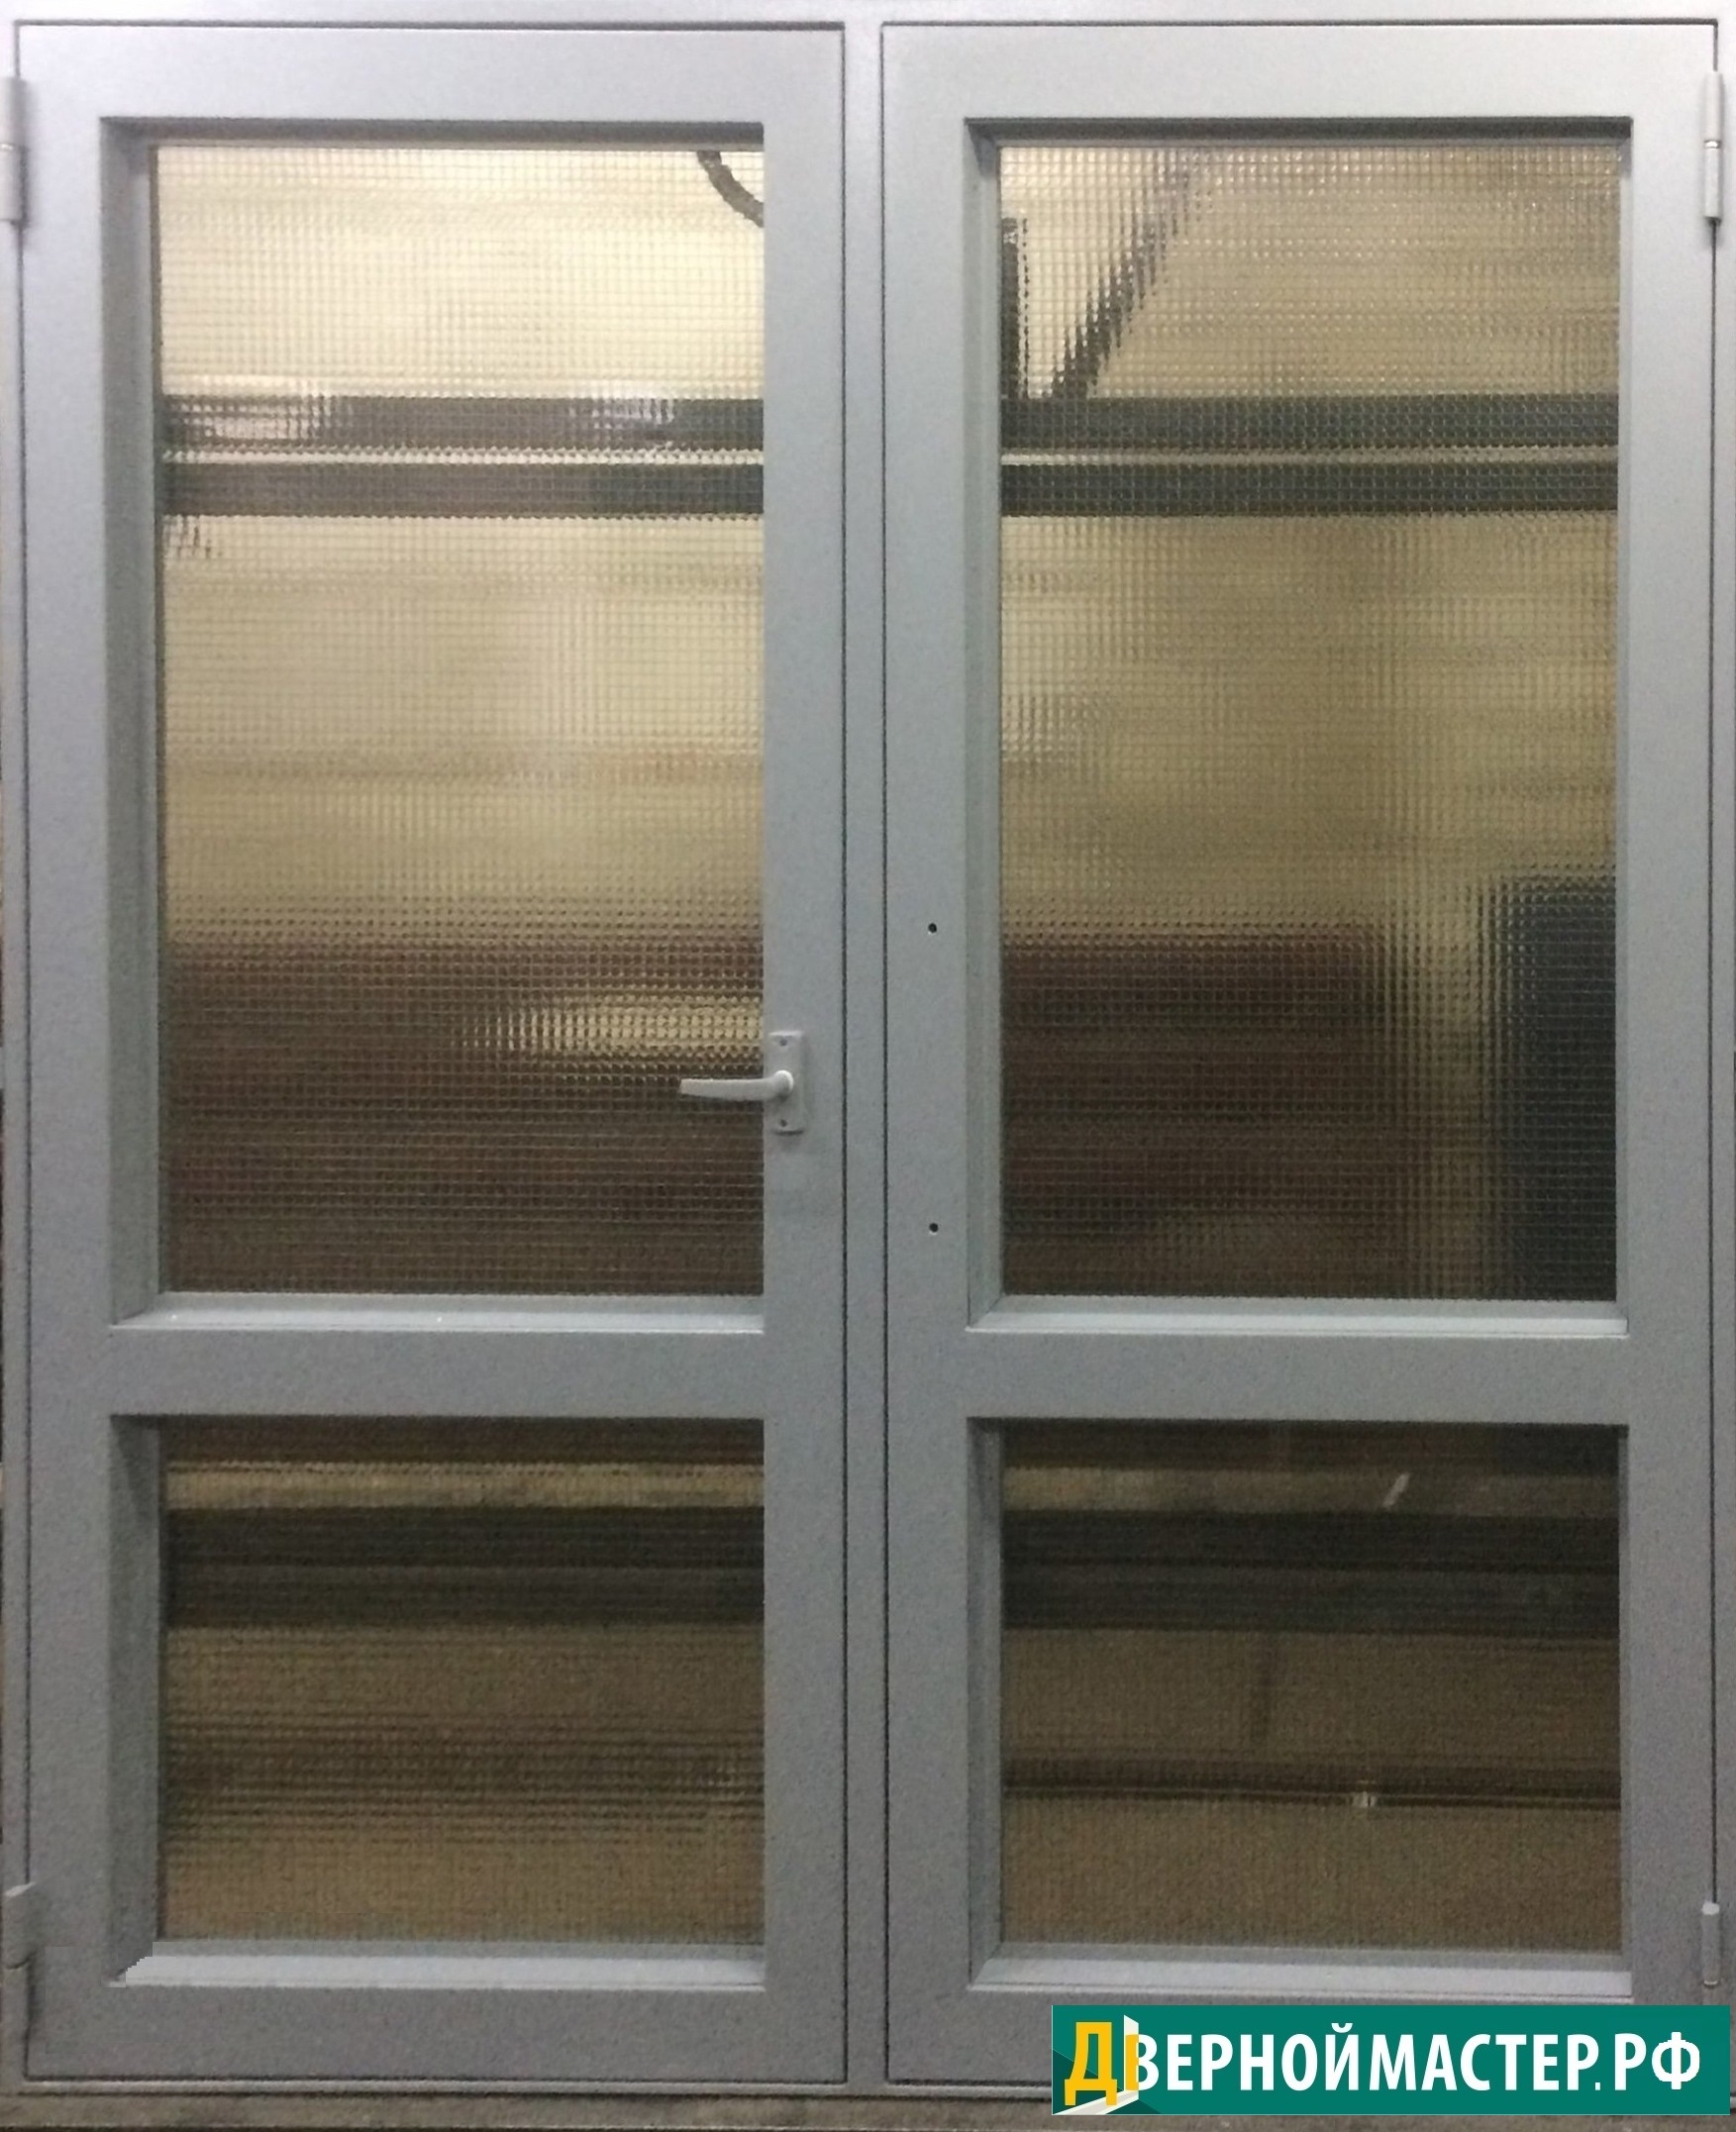 Двупольная металлическая дверь с армированным стеклом, створки равнозначные